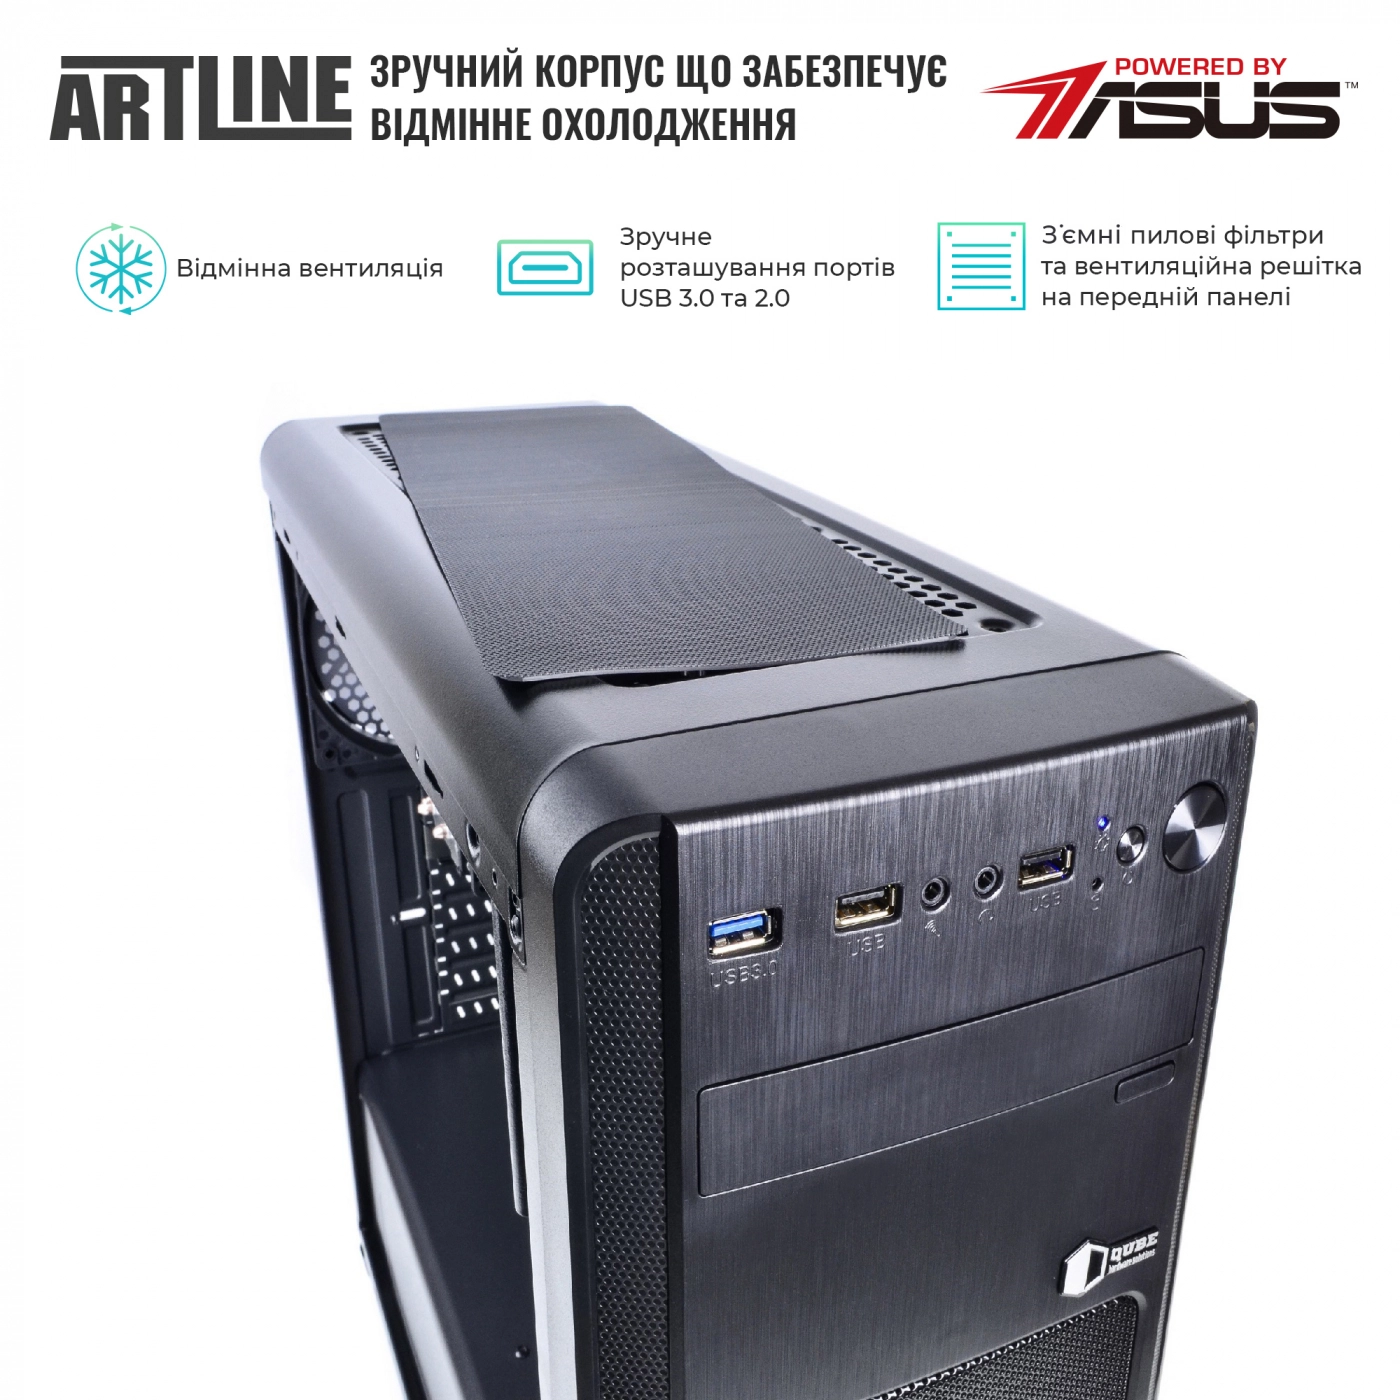 Купить Сервер ARTLINE Business T25v35 - фото 4